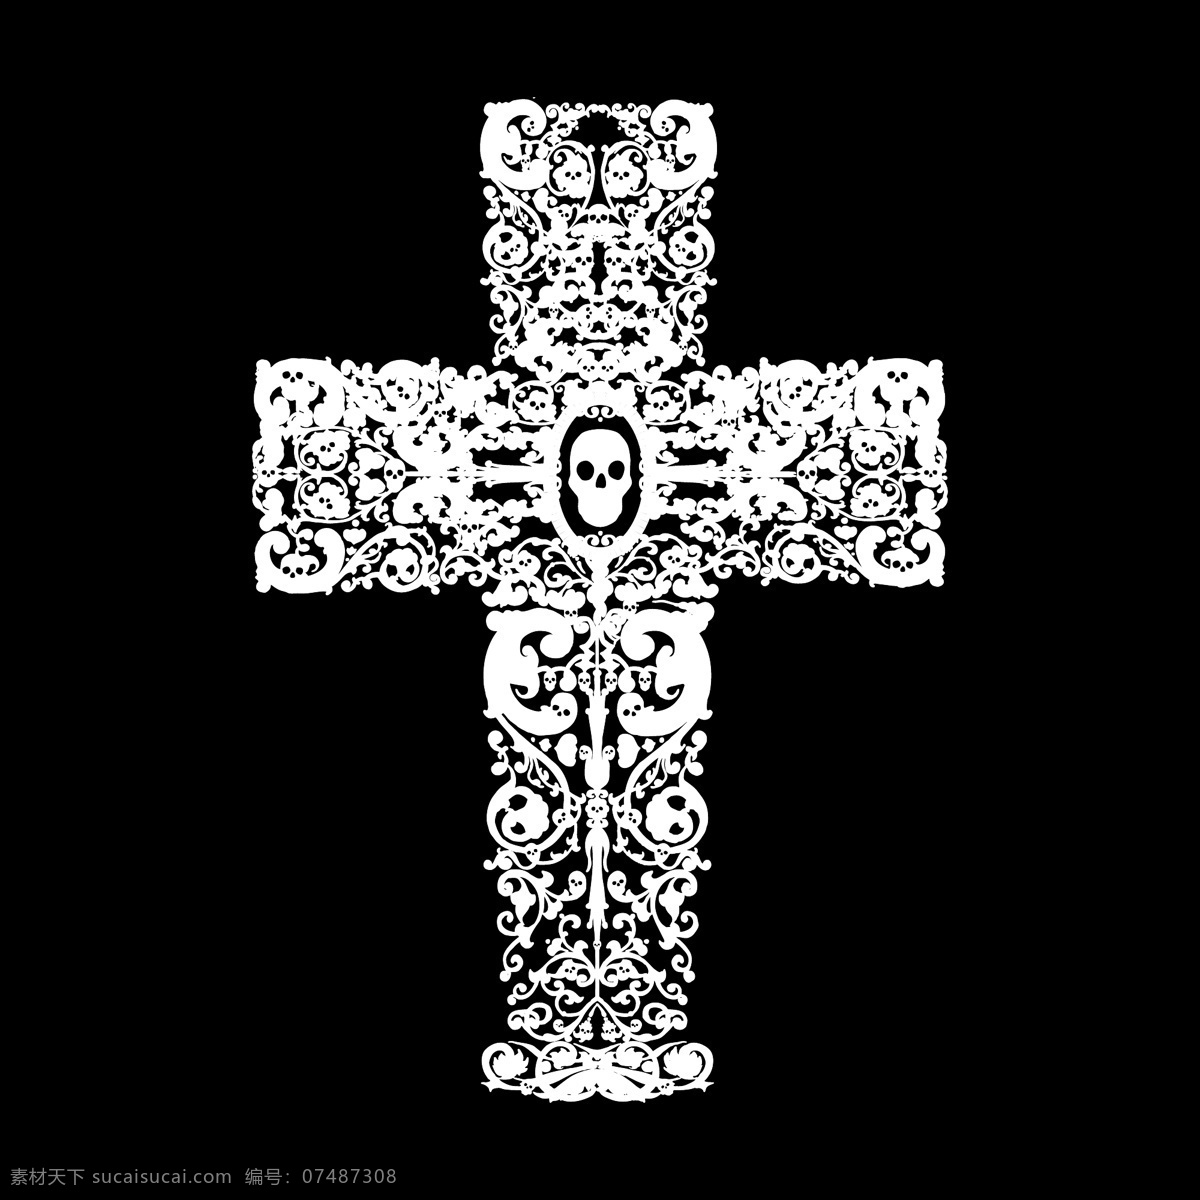 印花 矢量图 t恤图案 服装图案 骷髅 人物 十字架 印花矢量图 面料图库 服装设计 图案花型